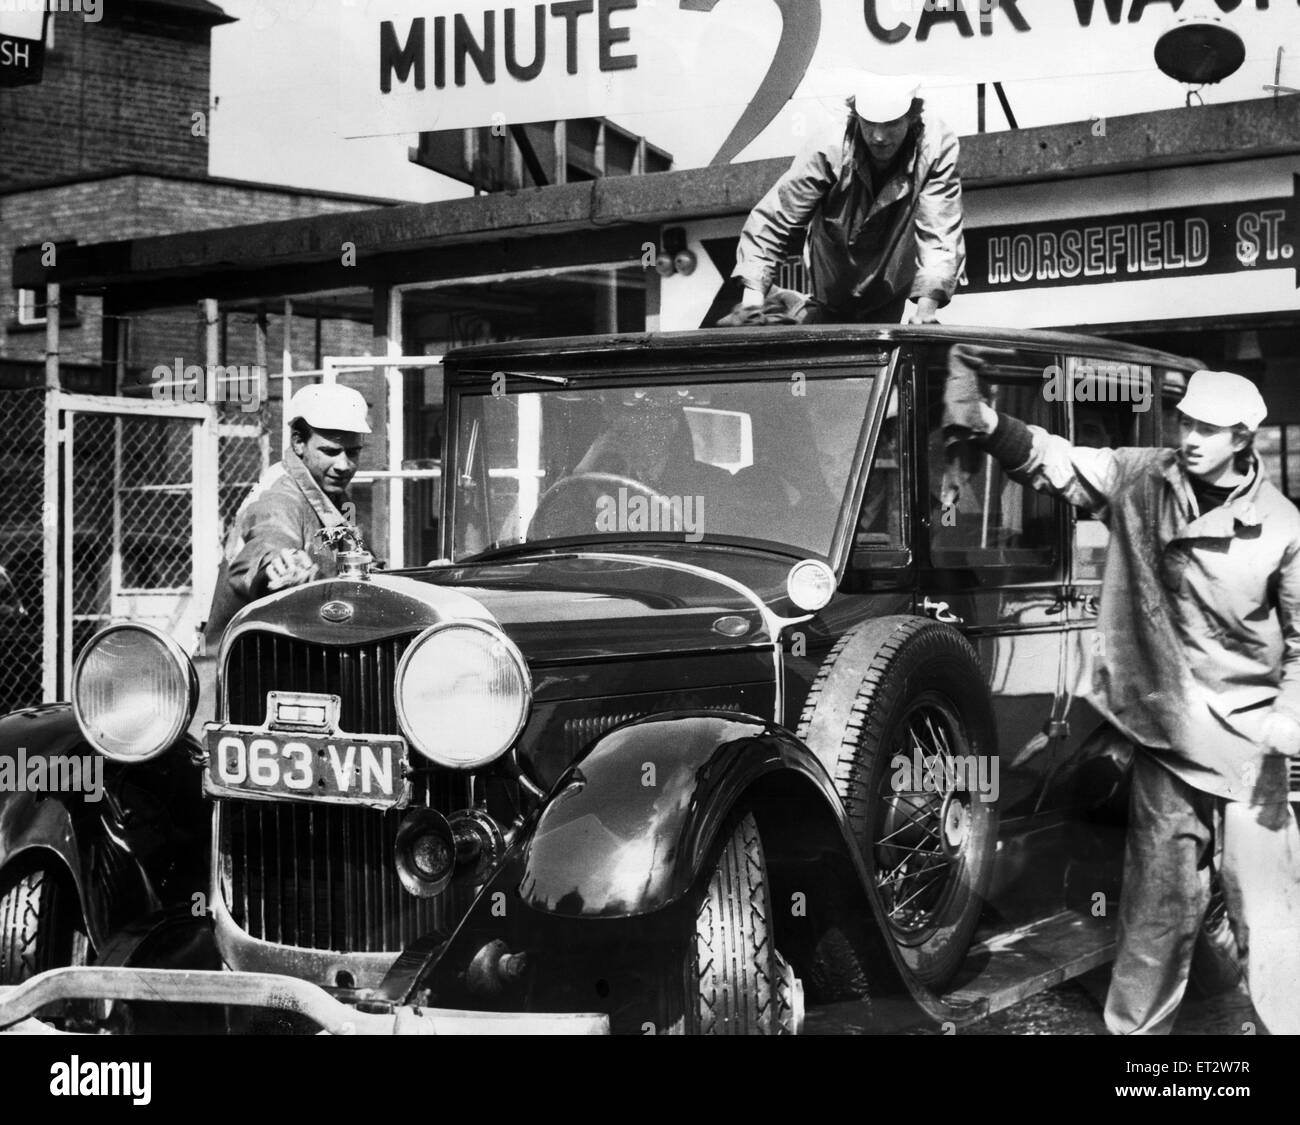 1928-Lincoln-Limousine im Besitz von meinem Ayrton Marske, bekommt waschen und Polieren von "Waschen und auffrischen" Jungs, zwei Minute Car Wash, Middlesbrough, 16. April 1964. Stockfoto